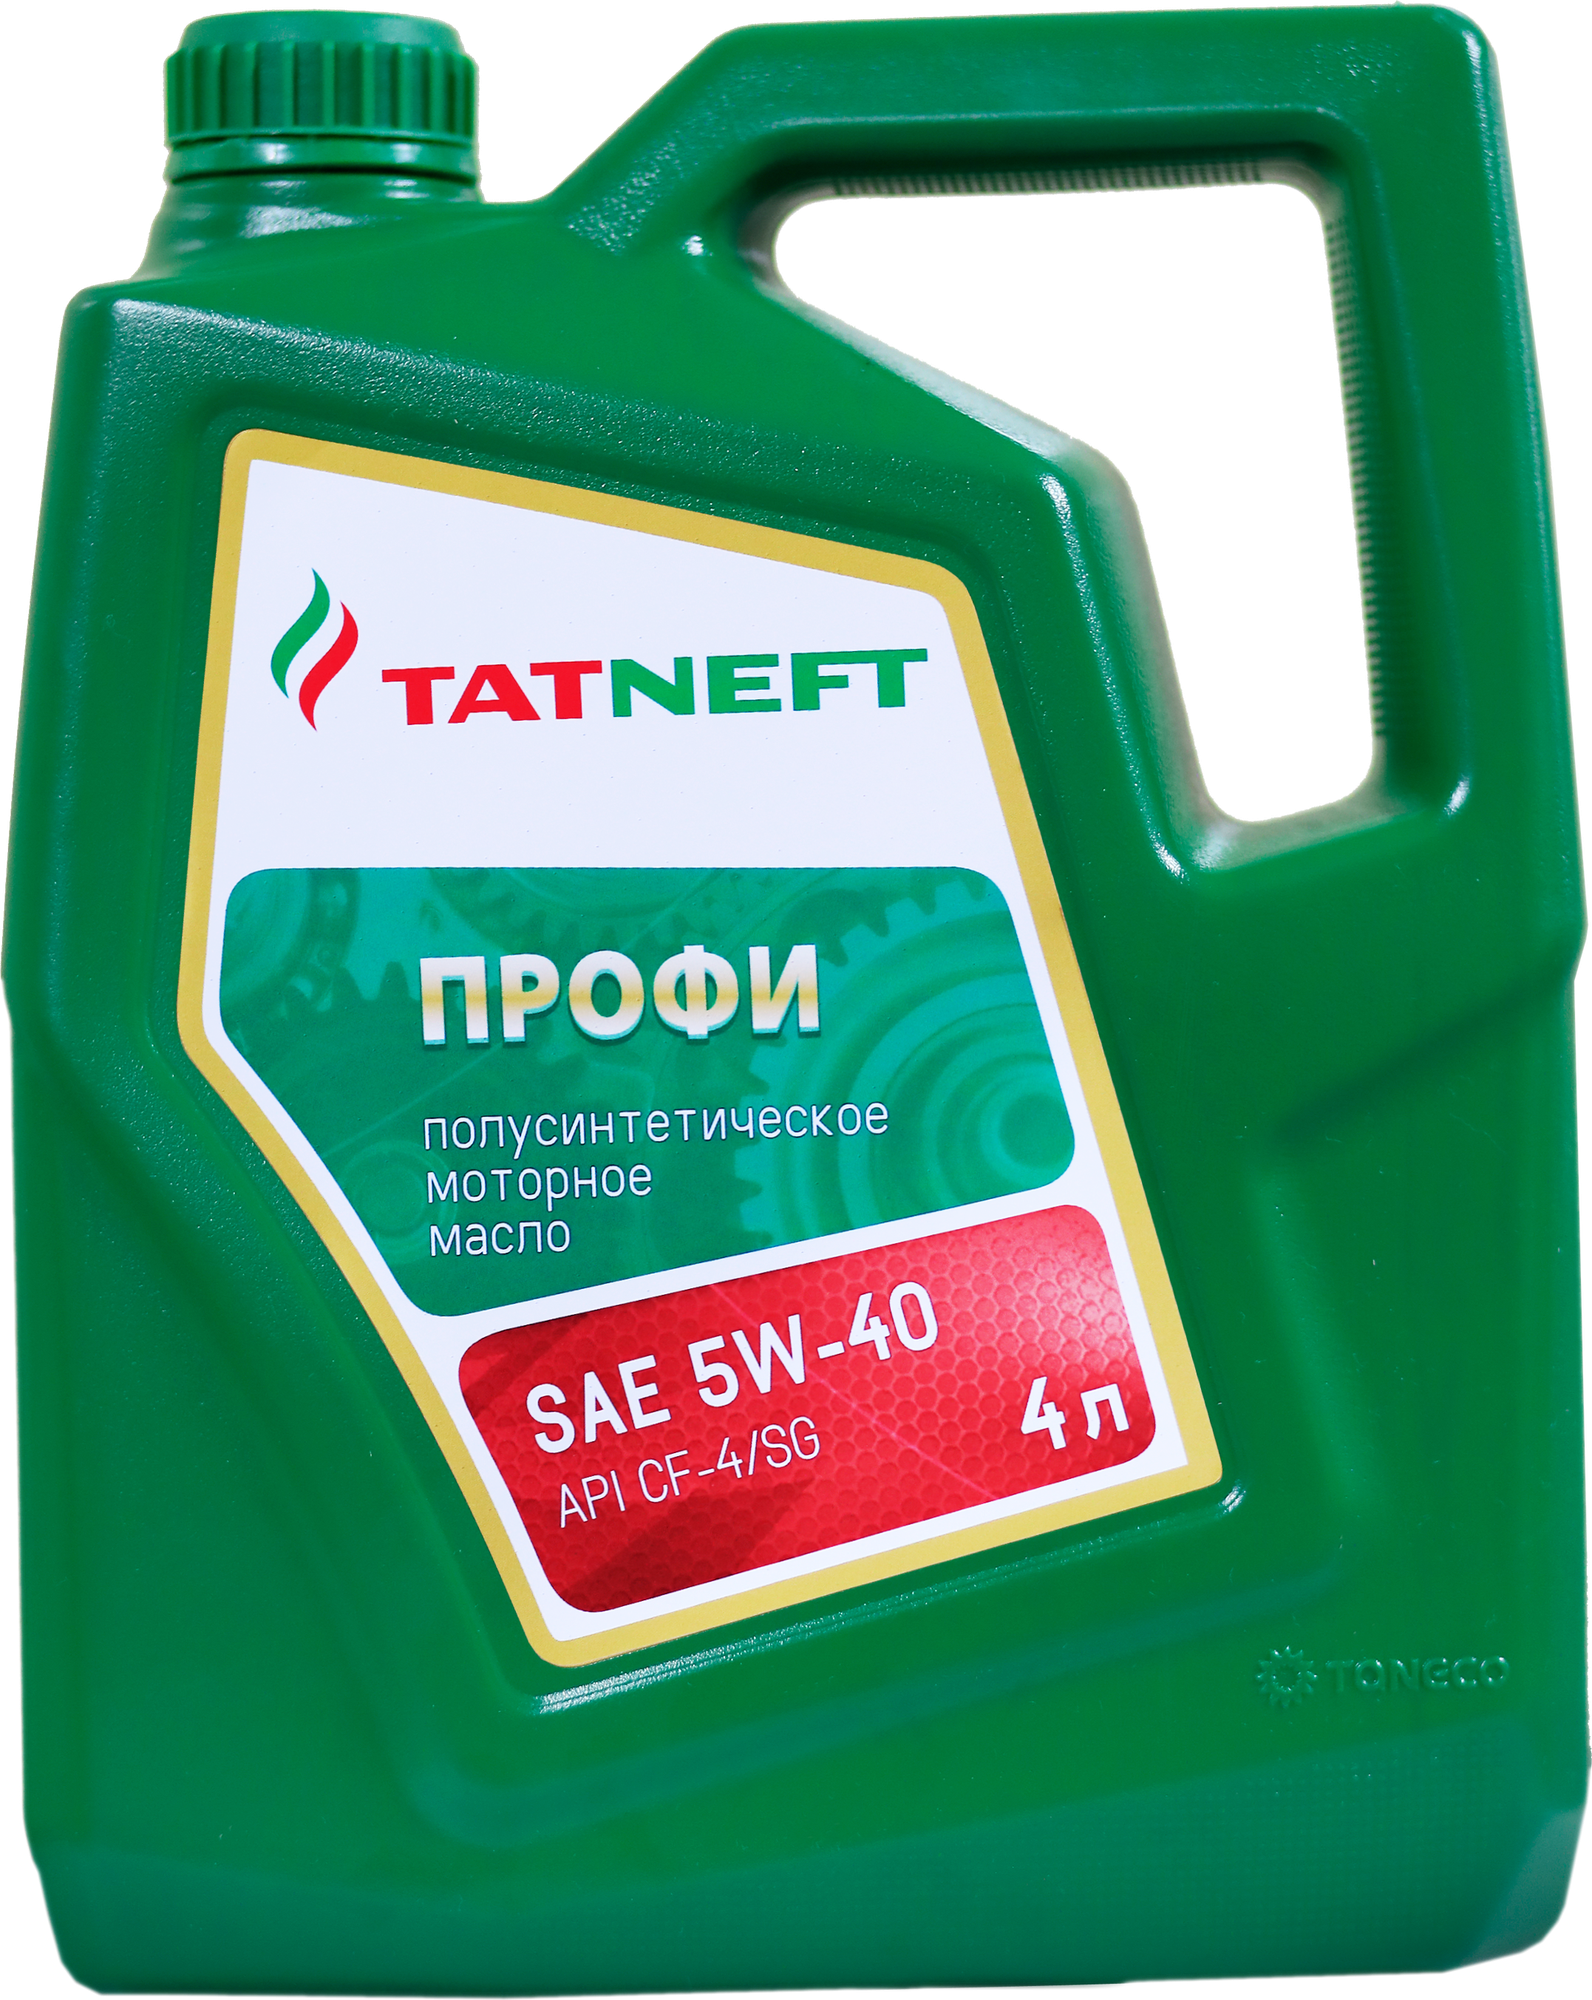 Полусинтетическое моторное масло Татнефть Профи 5W-40, 4 л